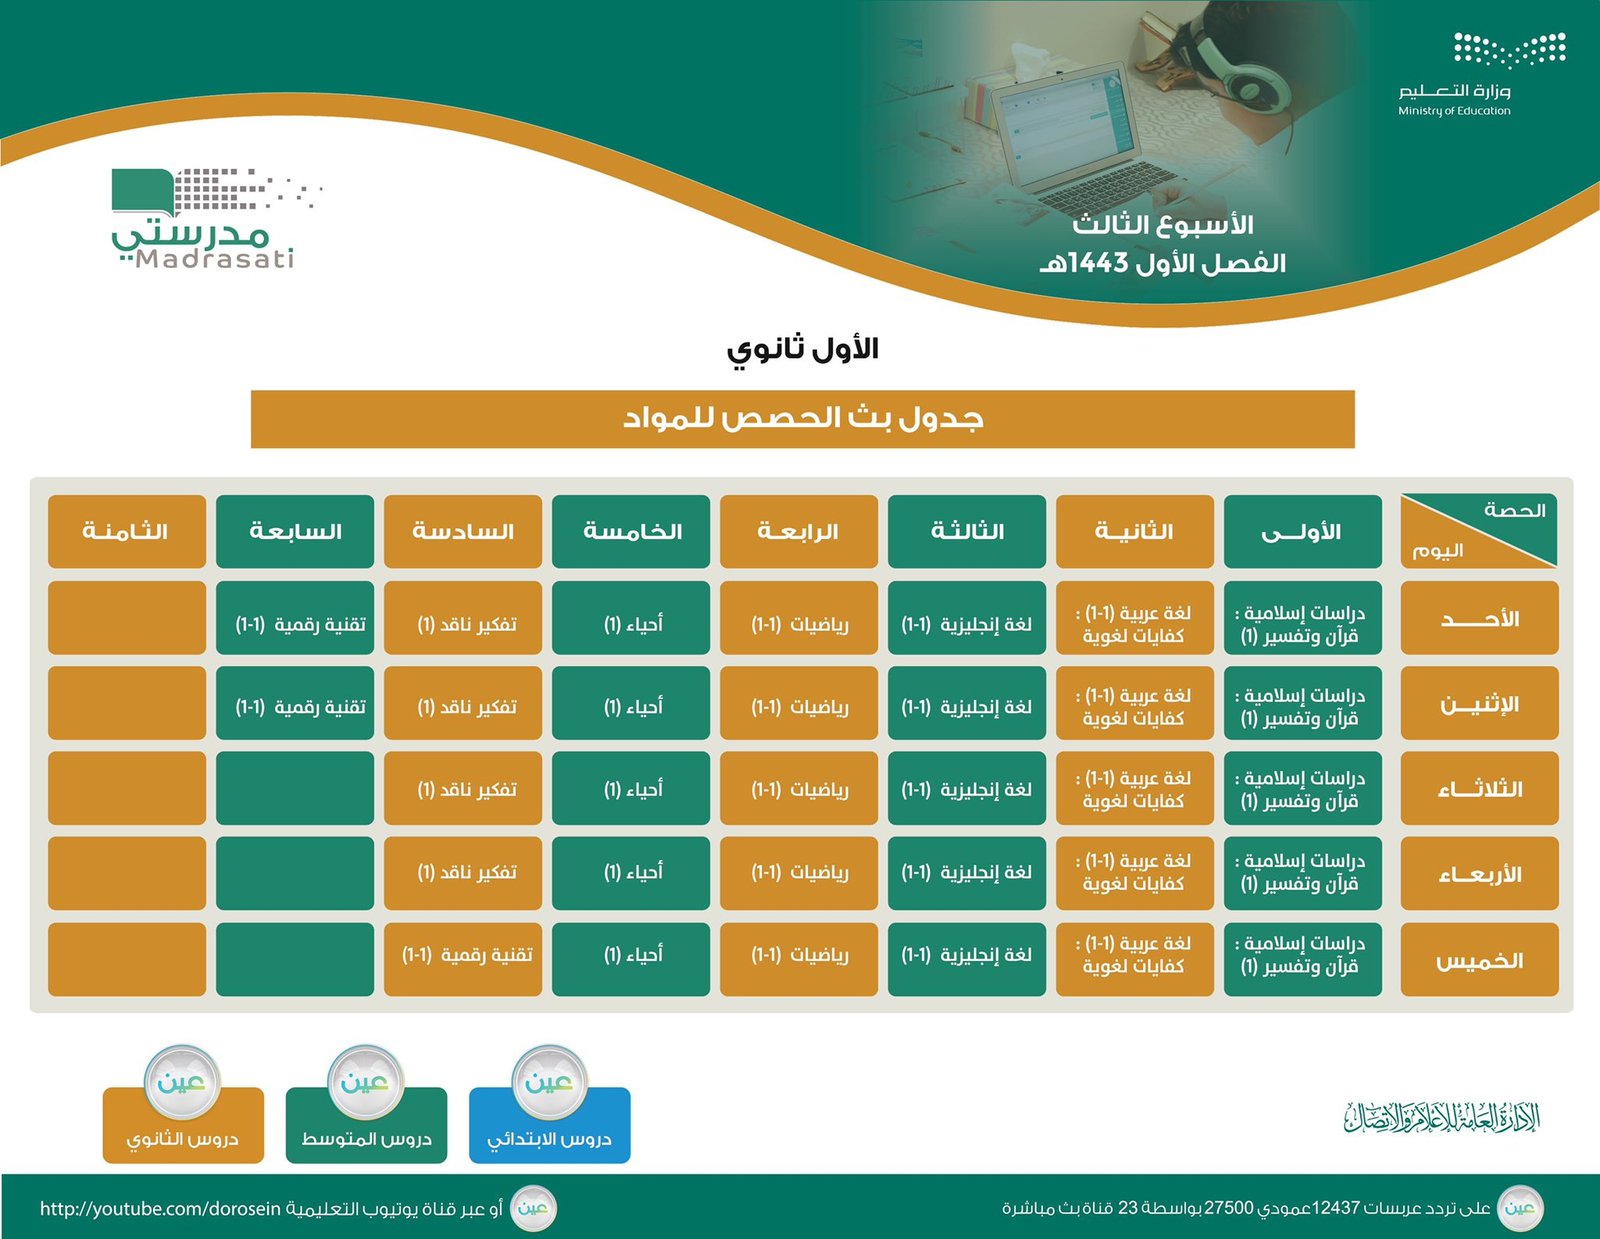 الحصص الدراسية للمتوسط والثانوي للأسبوع الثالث في السعوديةس